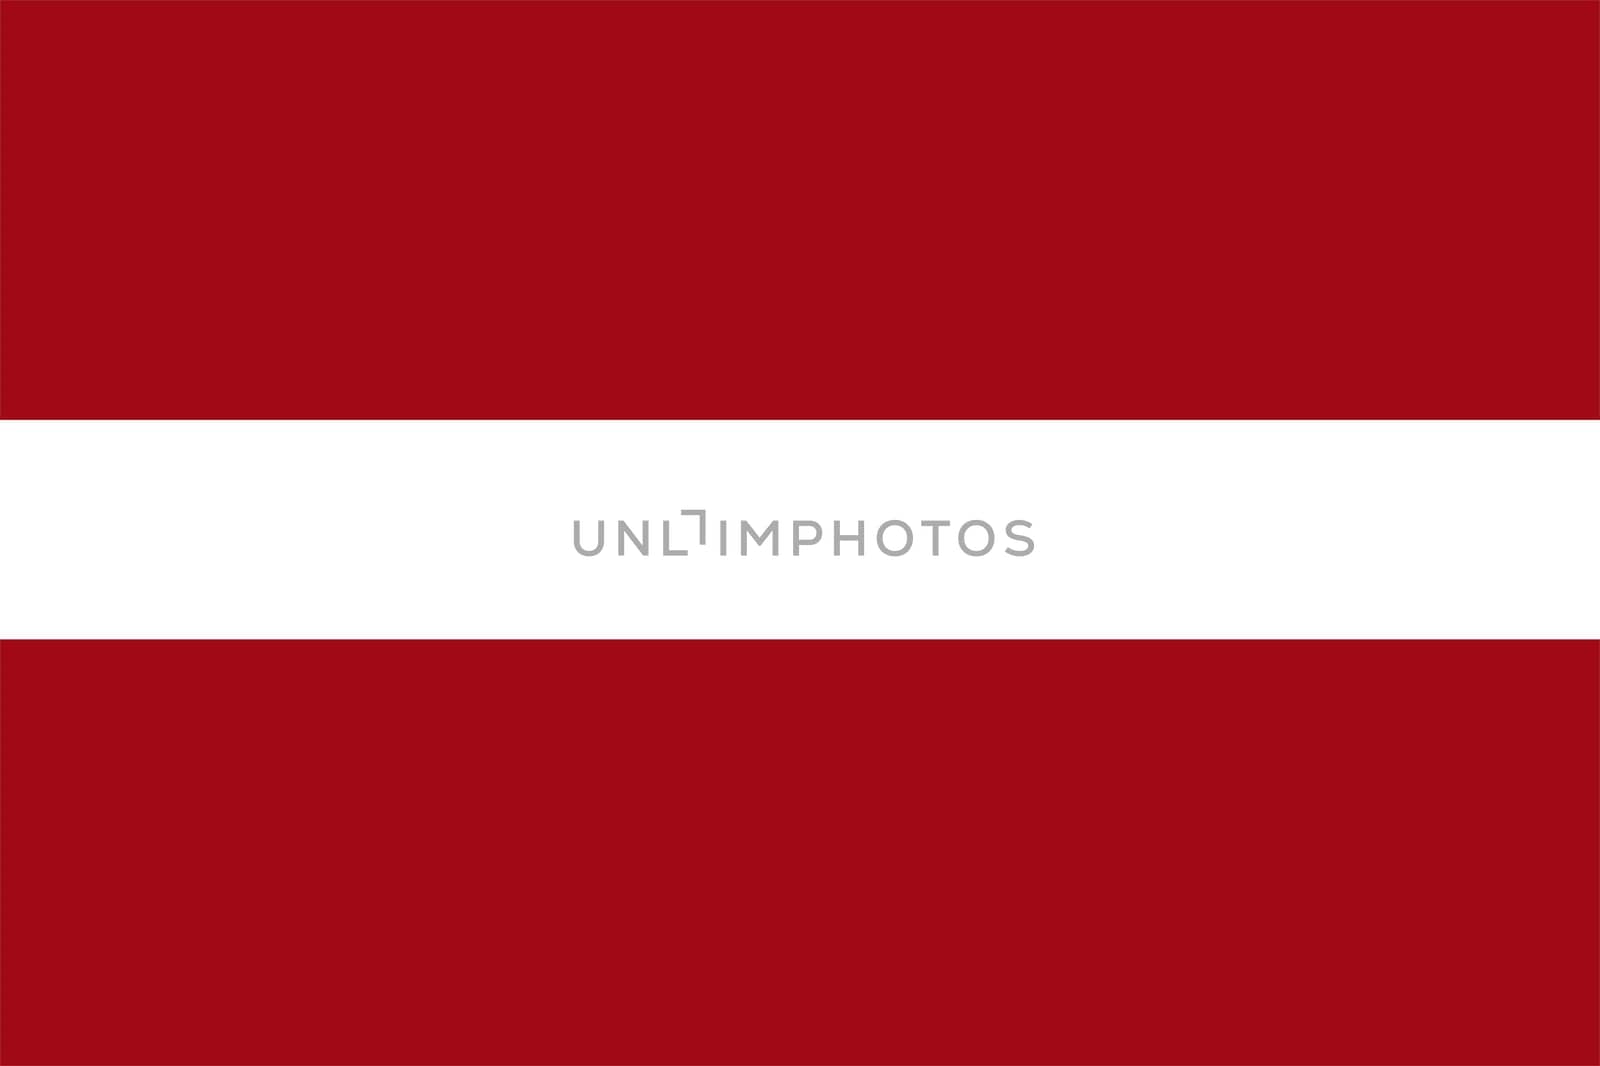 Flag Of Latvia by tony4urban